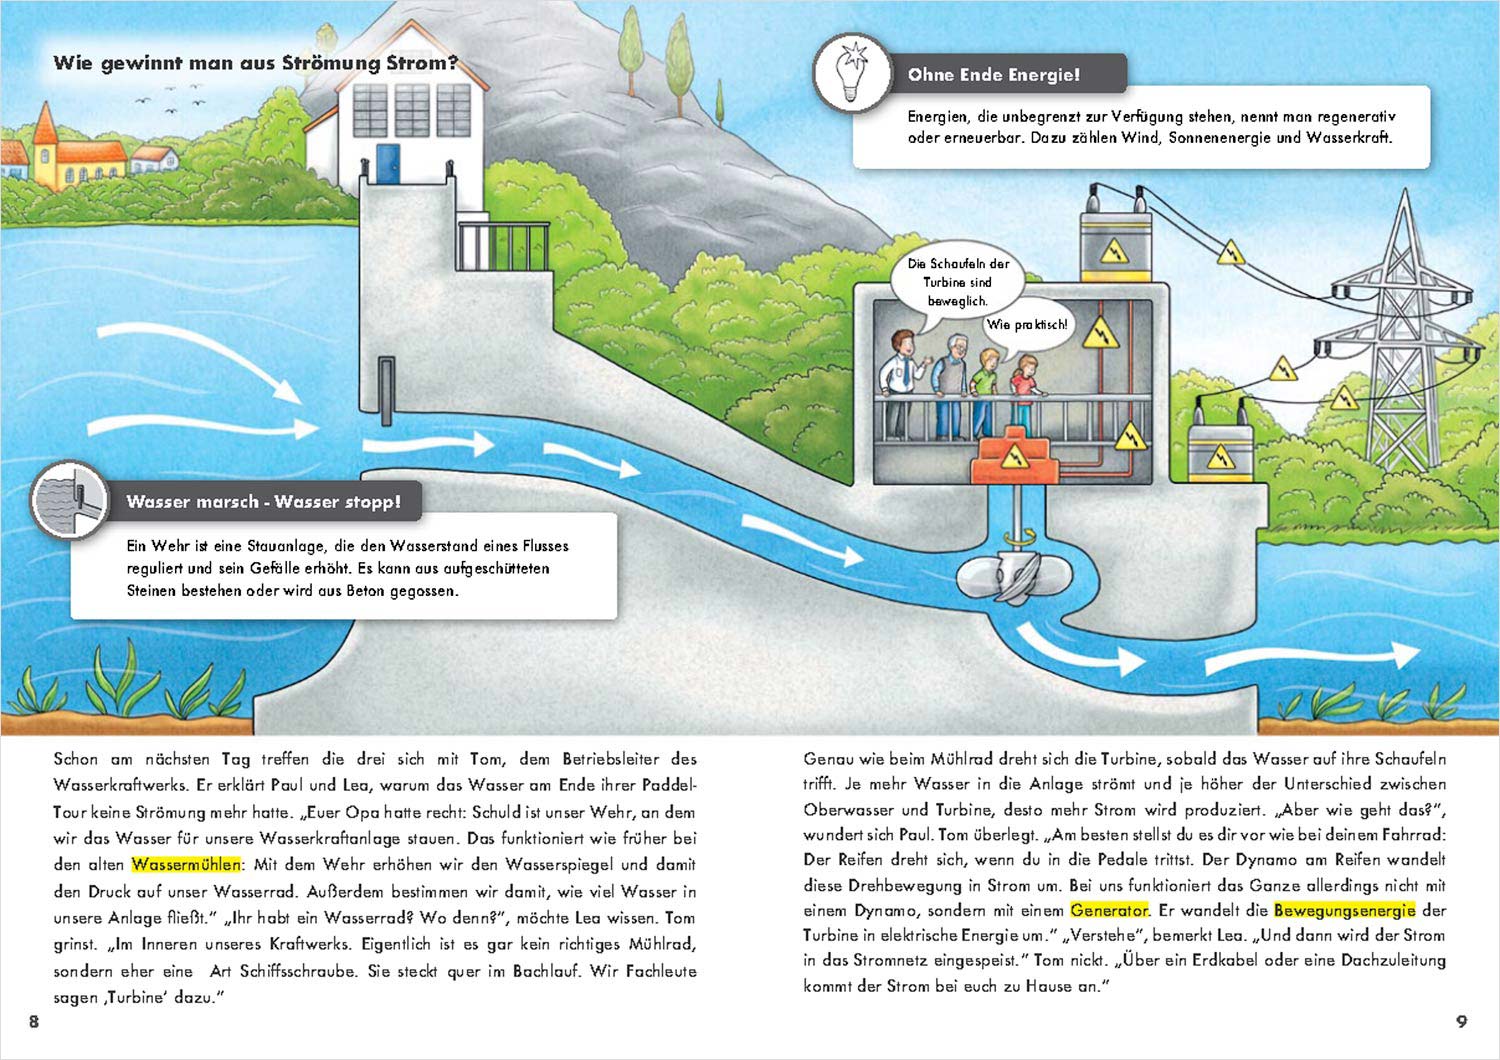 Strom aus Wasserkraft: Seiten 8-9